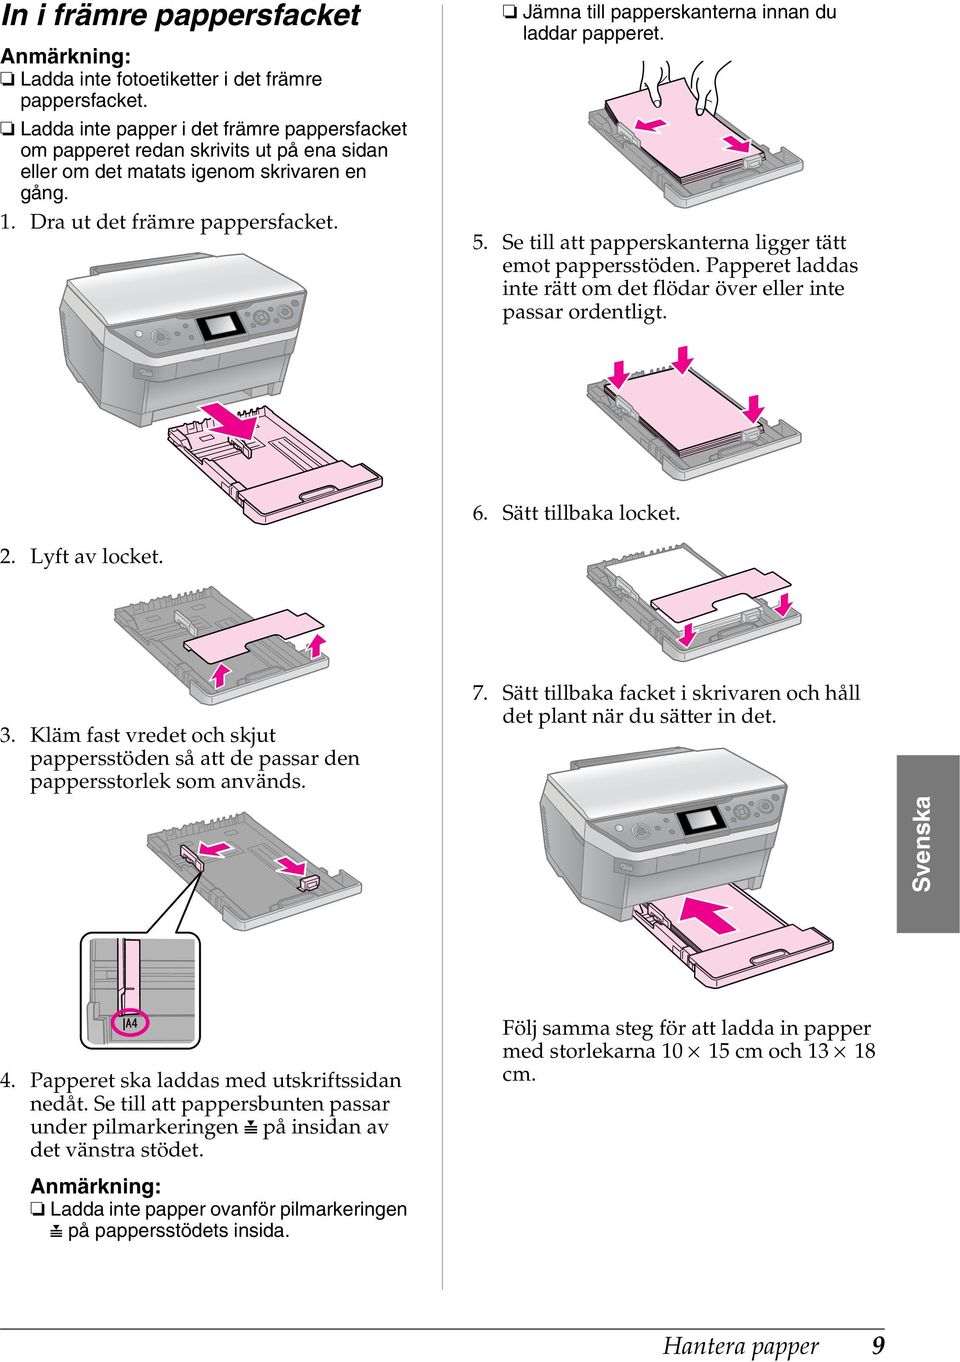 Jämna till papperskanterna innan du laddar papperet. 5. Se till att papperskanterna ligger tätt emot pappersstöden. Papperet laddas inte rätt om det flödar över eller inte passar ordentligt. 6.